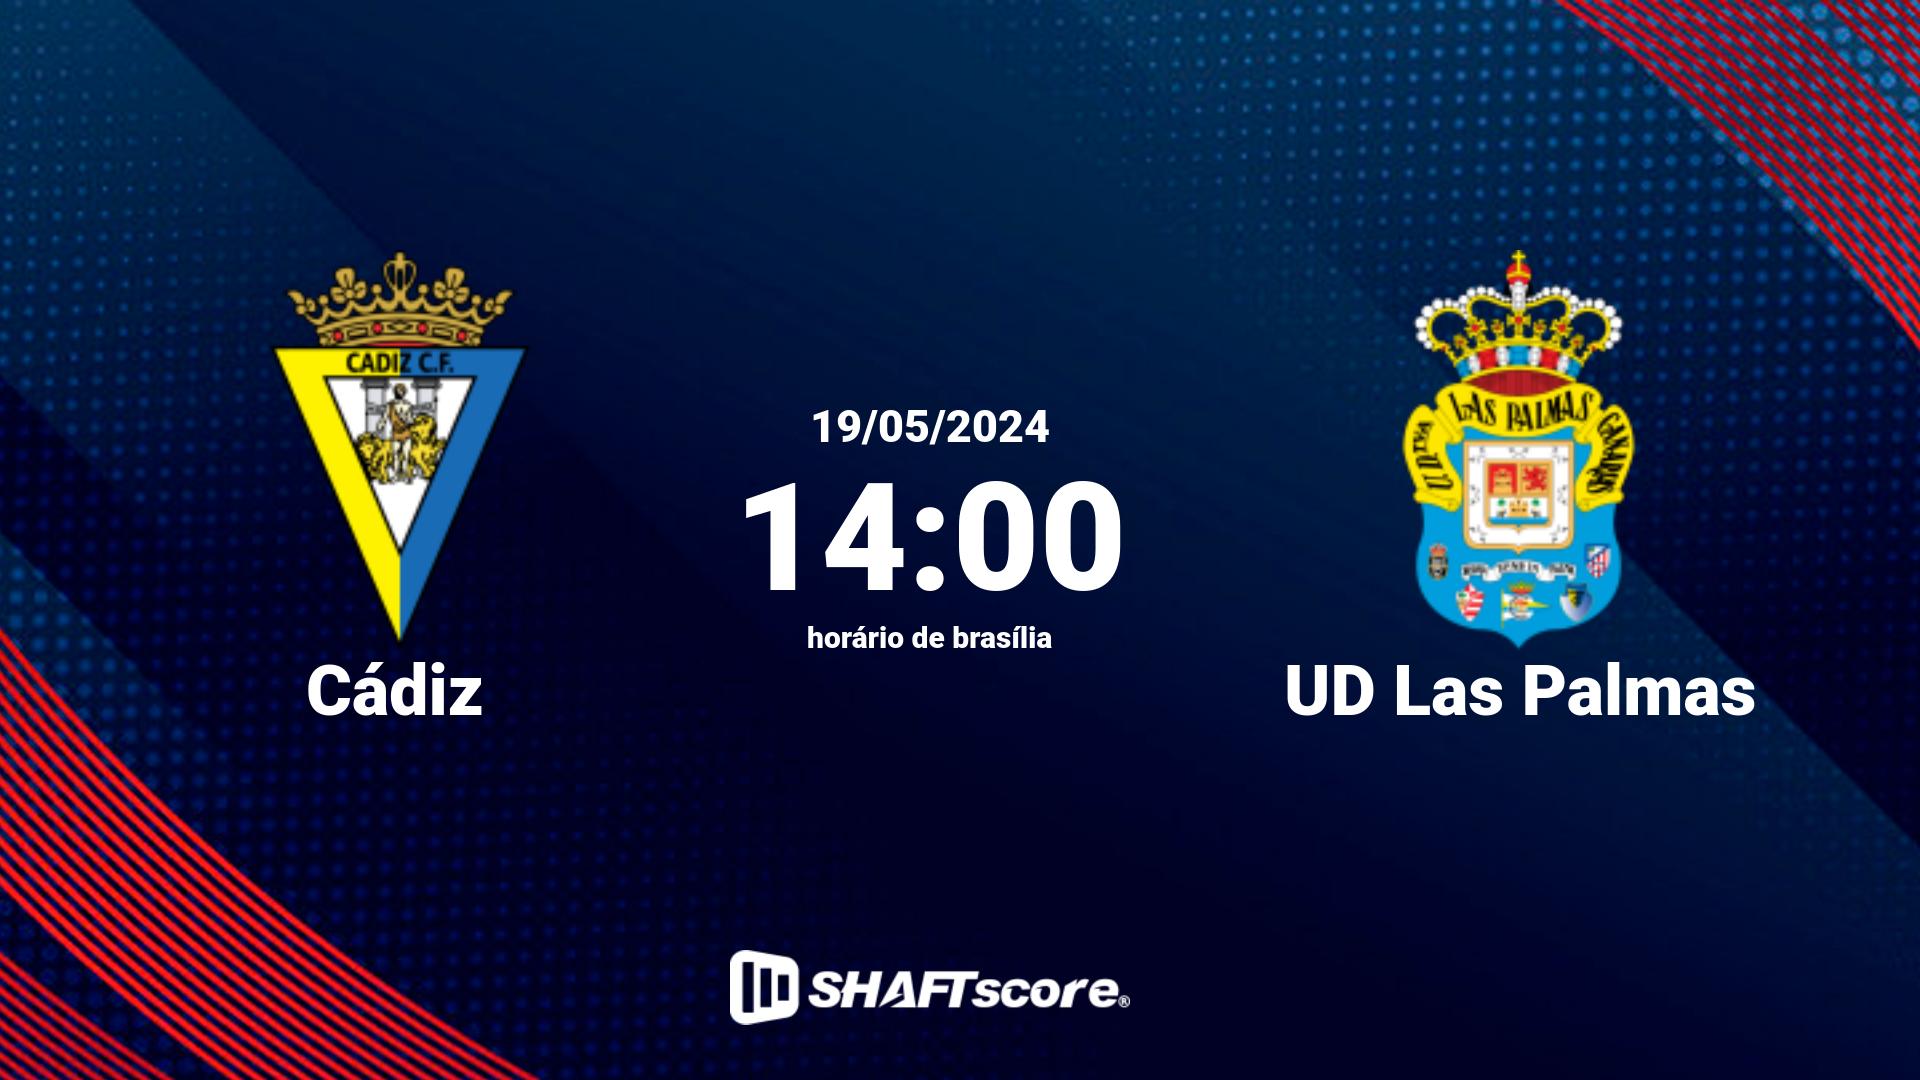 Estatísticas do jogo Cádiz vs UD Las Palmas 19.05 14:00